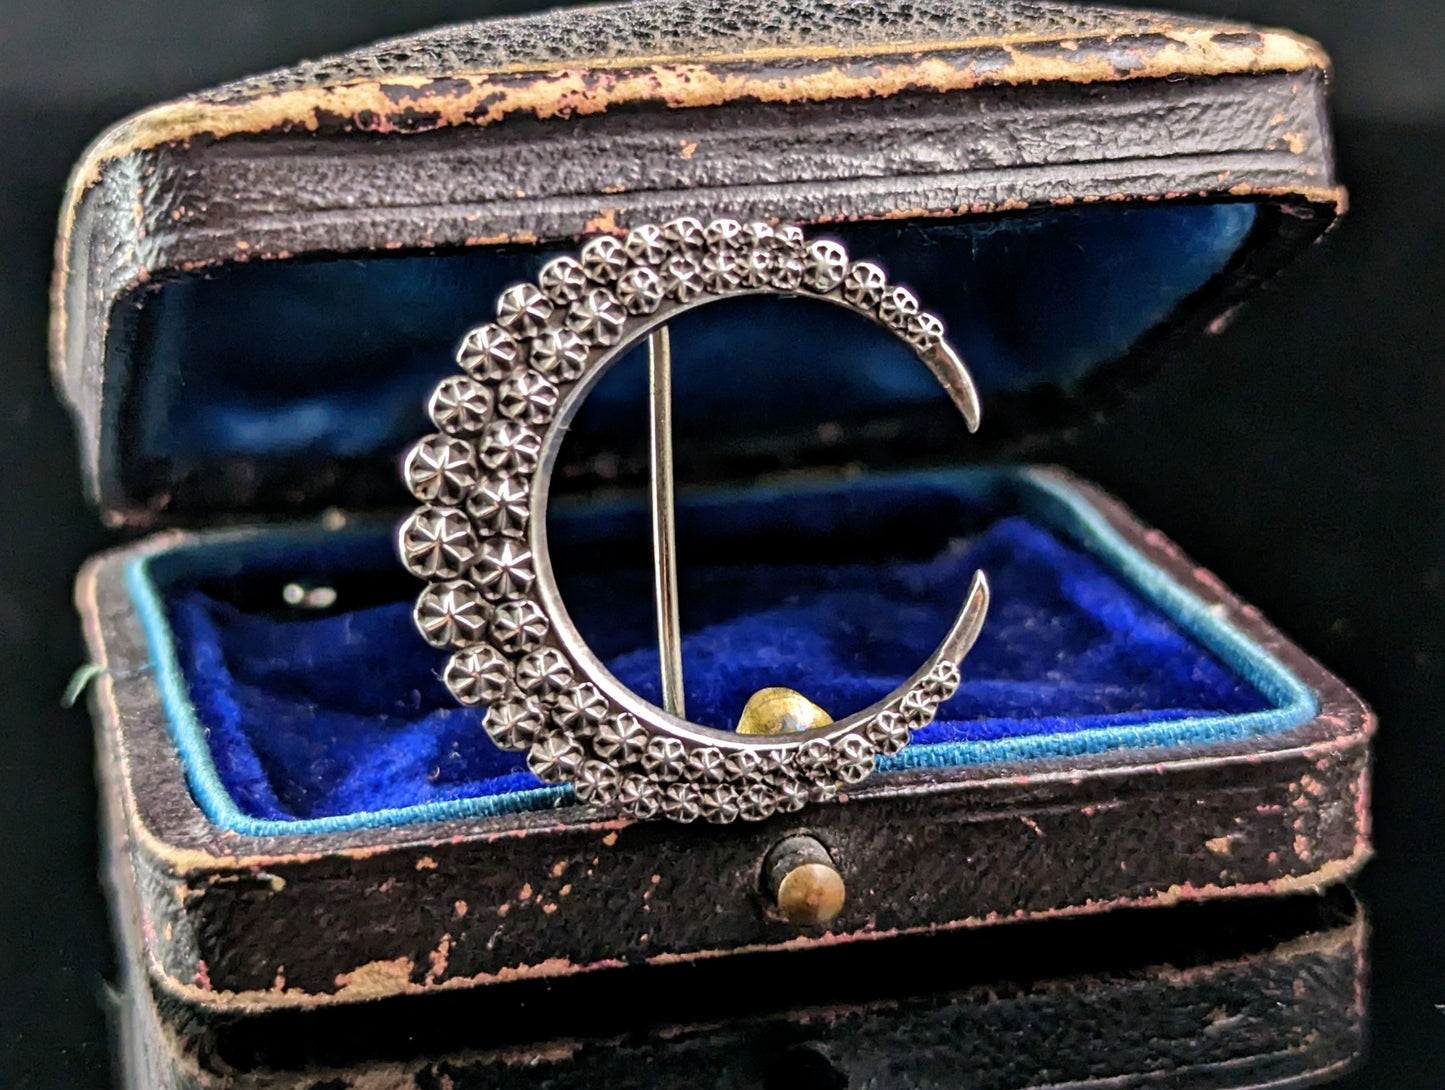 Antique sterling silver crescent brooch, Charles Horner